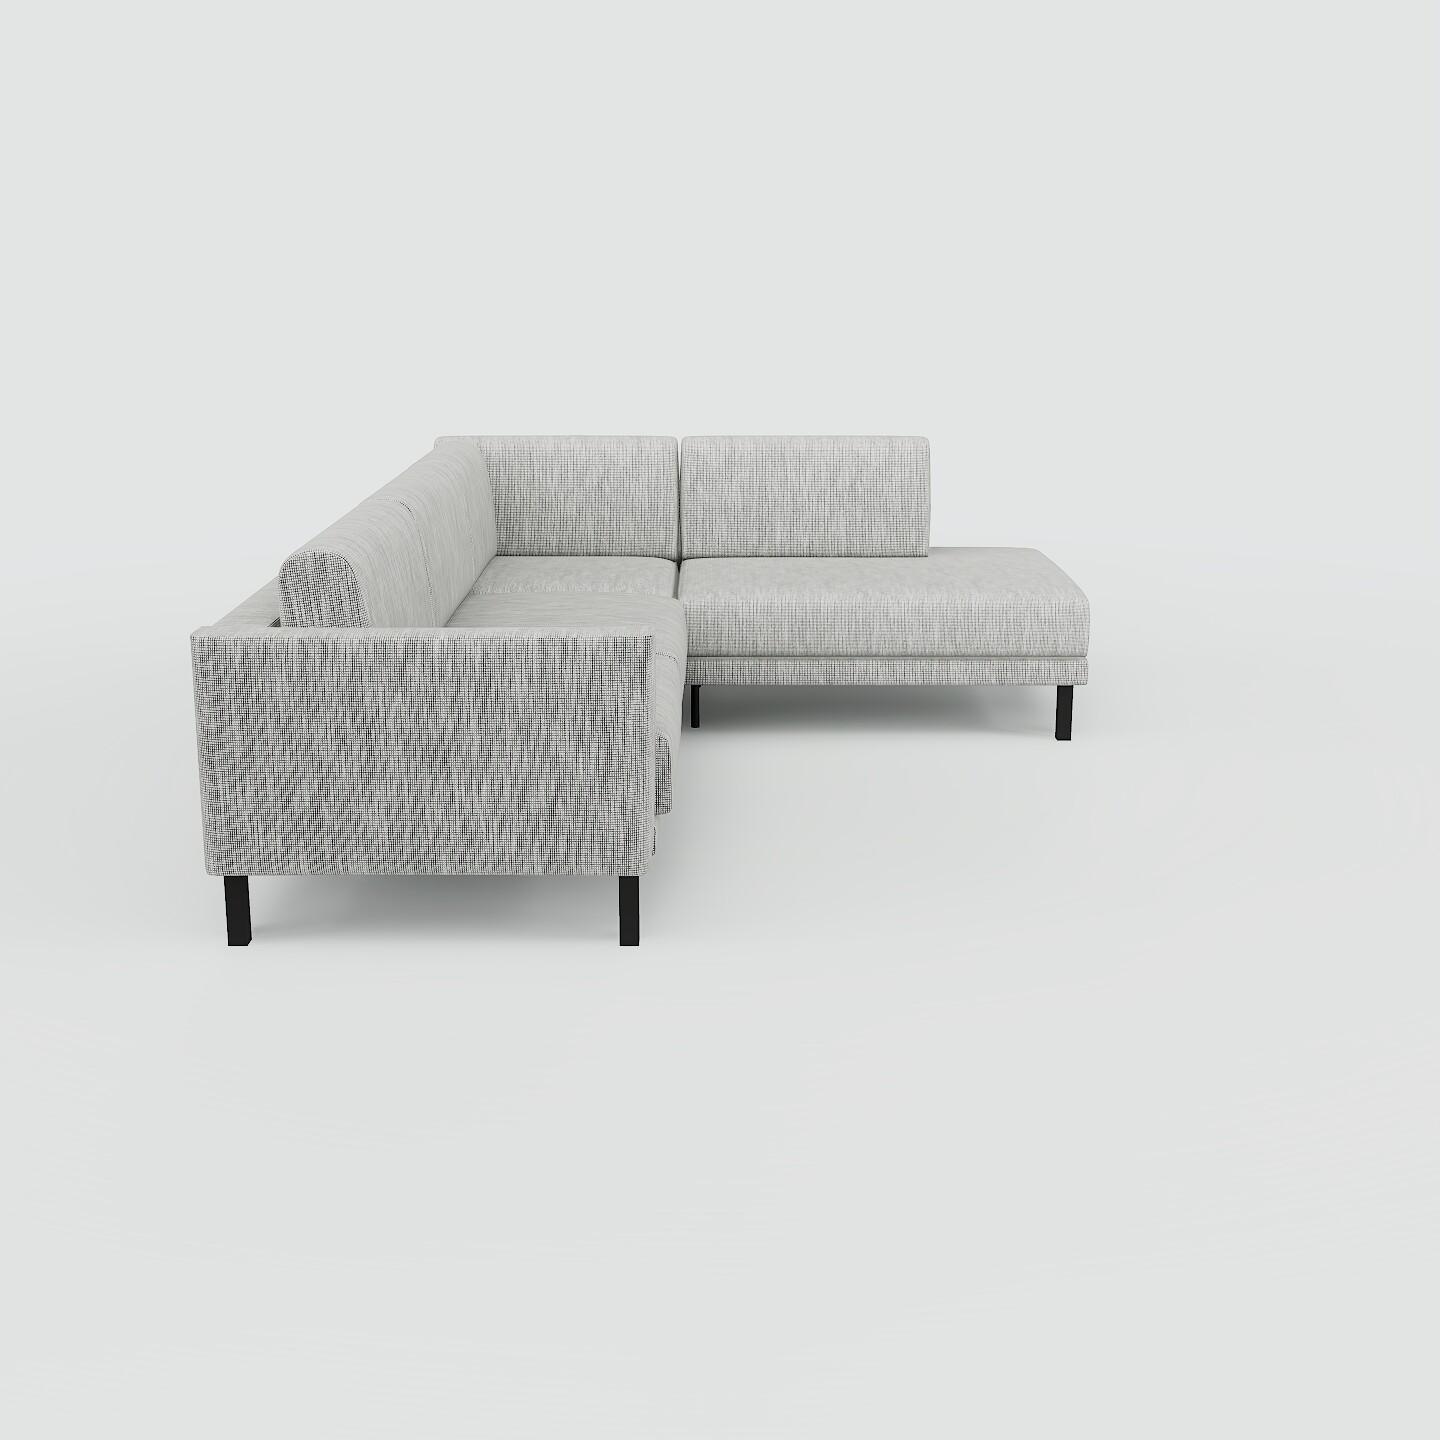 Ecksofa Granitweiß - Flexible Designer-Polsterecke, L-Form: Beste Qualität, einzigartiges Design - 214 x 81 x 266 cm, konfigurierbar von MYCS